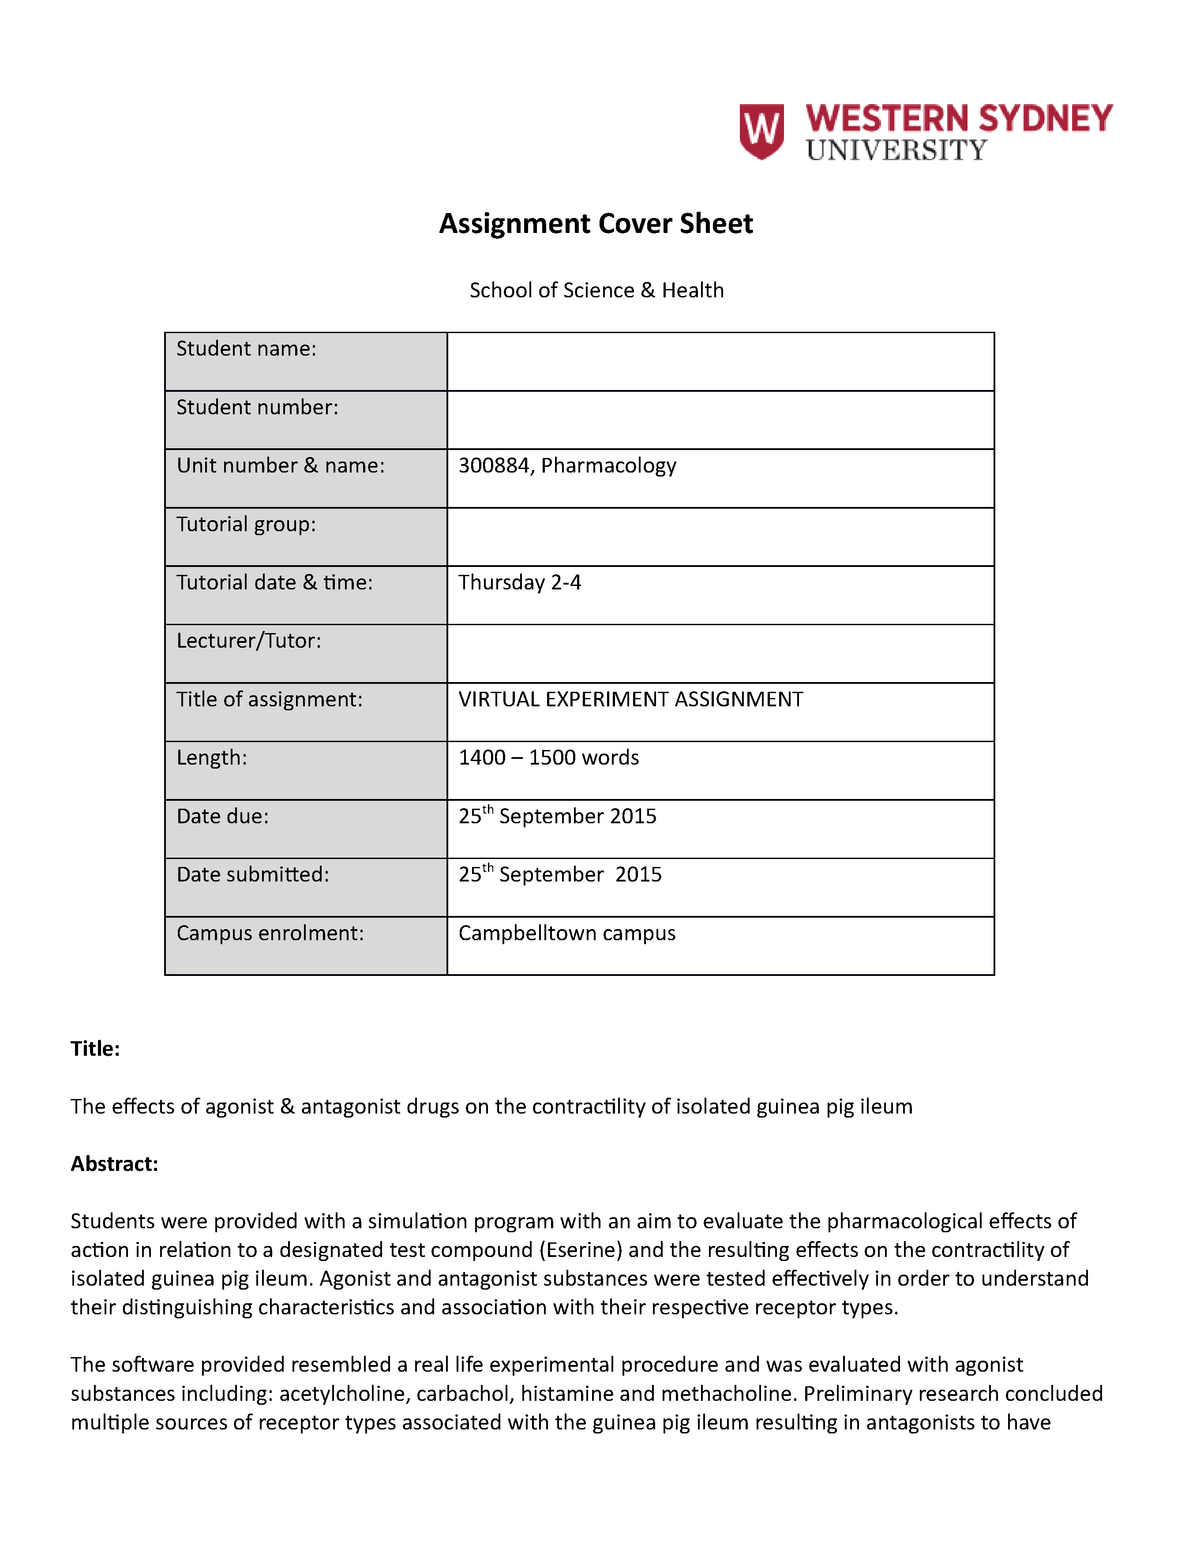 dcu assignment cover sheet